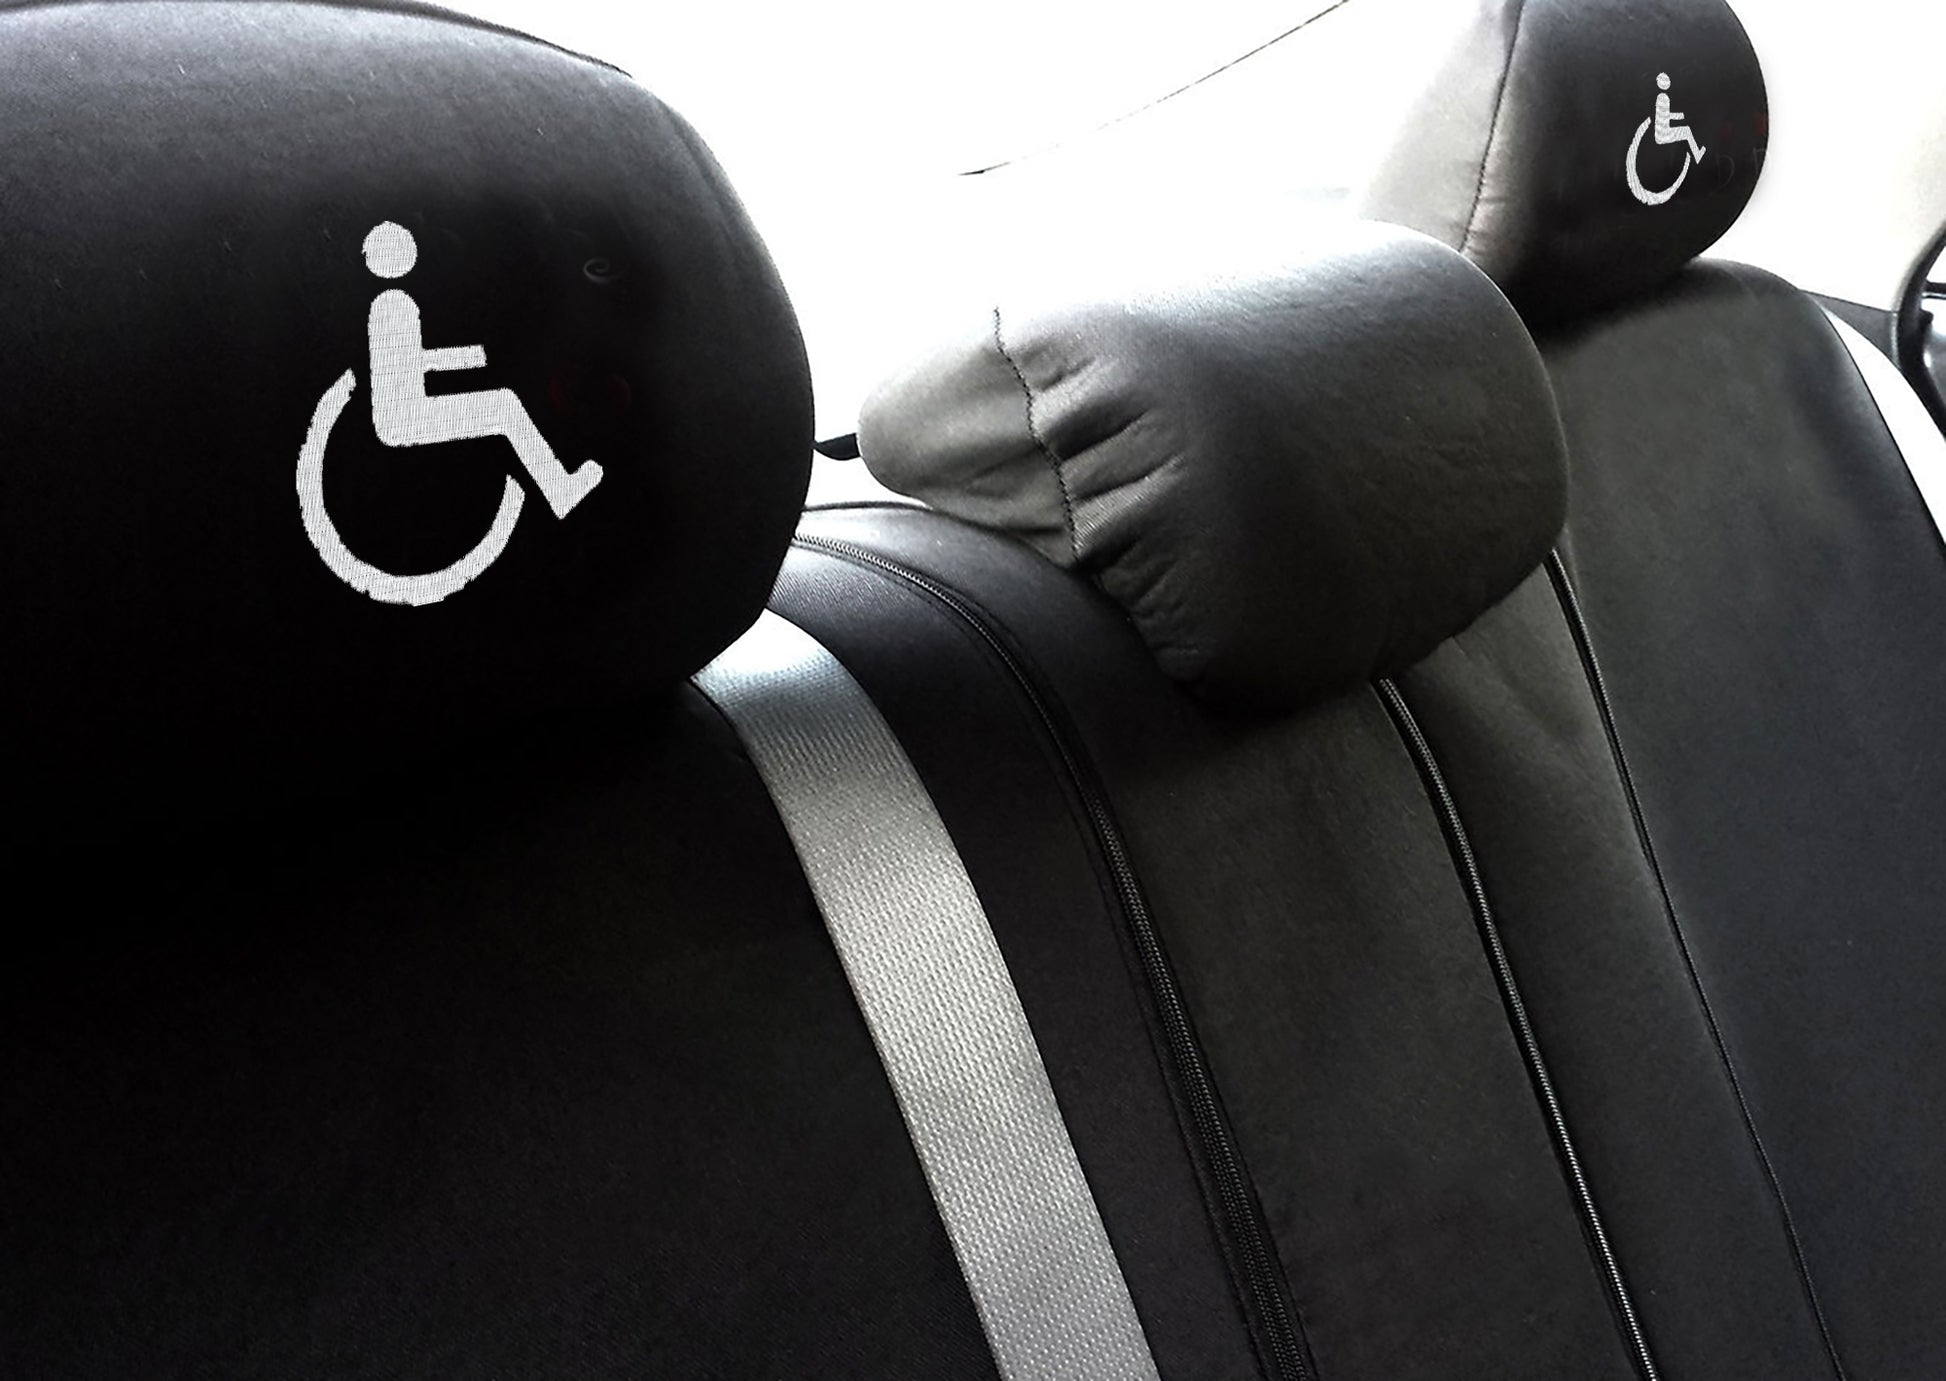 Handicap Sign Design Auto Truck SUV Car Seat Headrest Cover Accessory 1 Piece - Yupbizauto